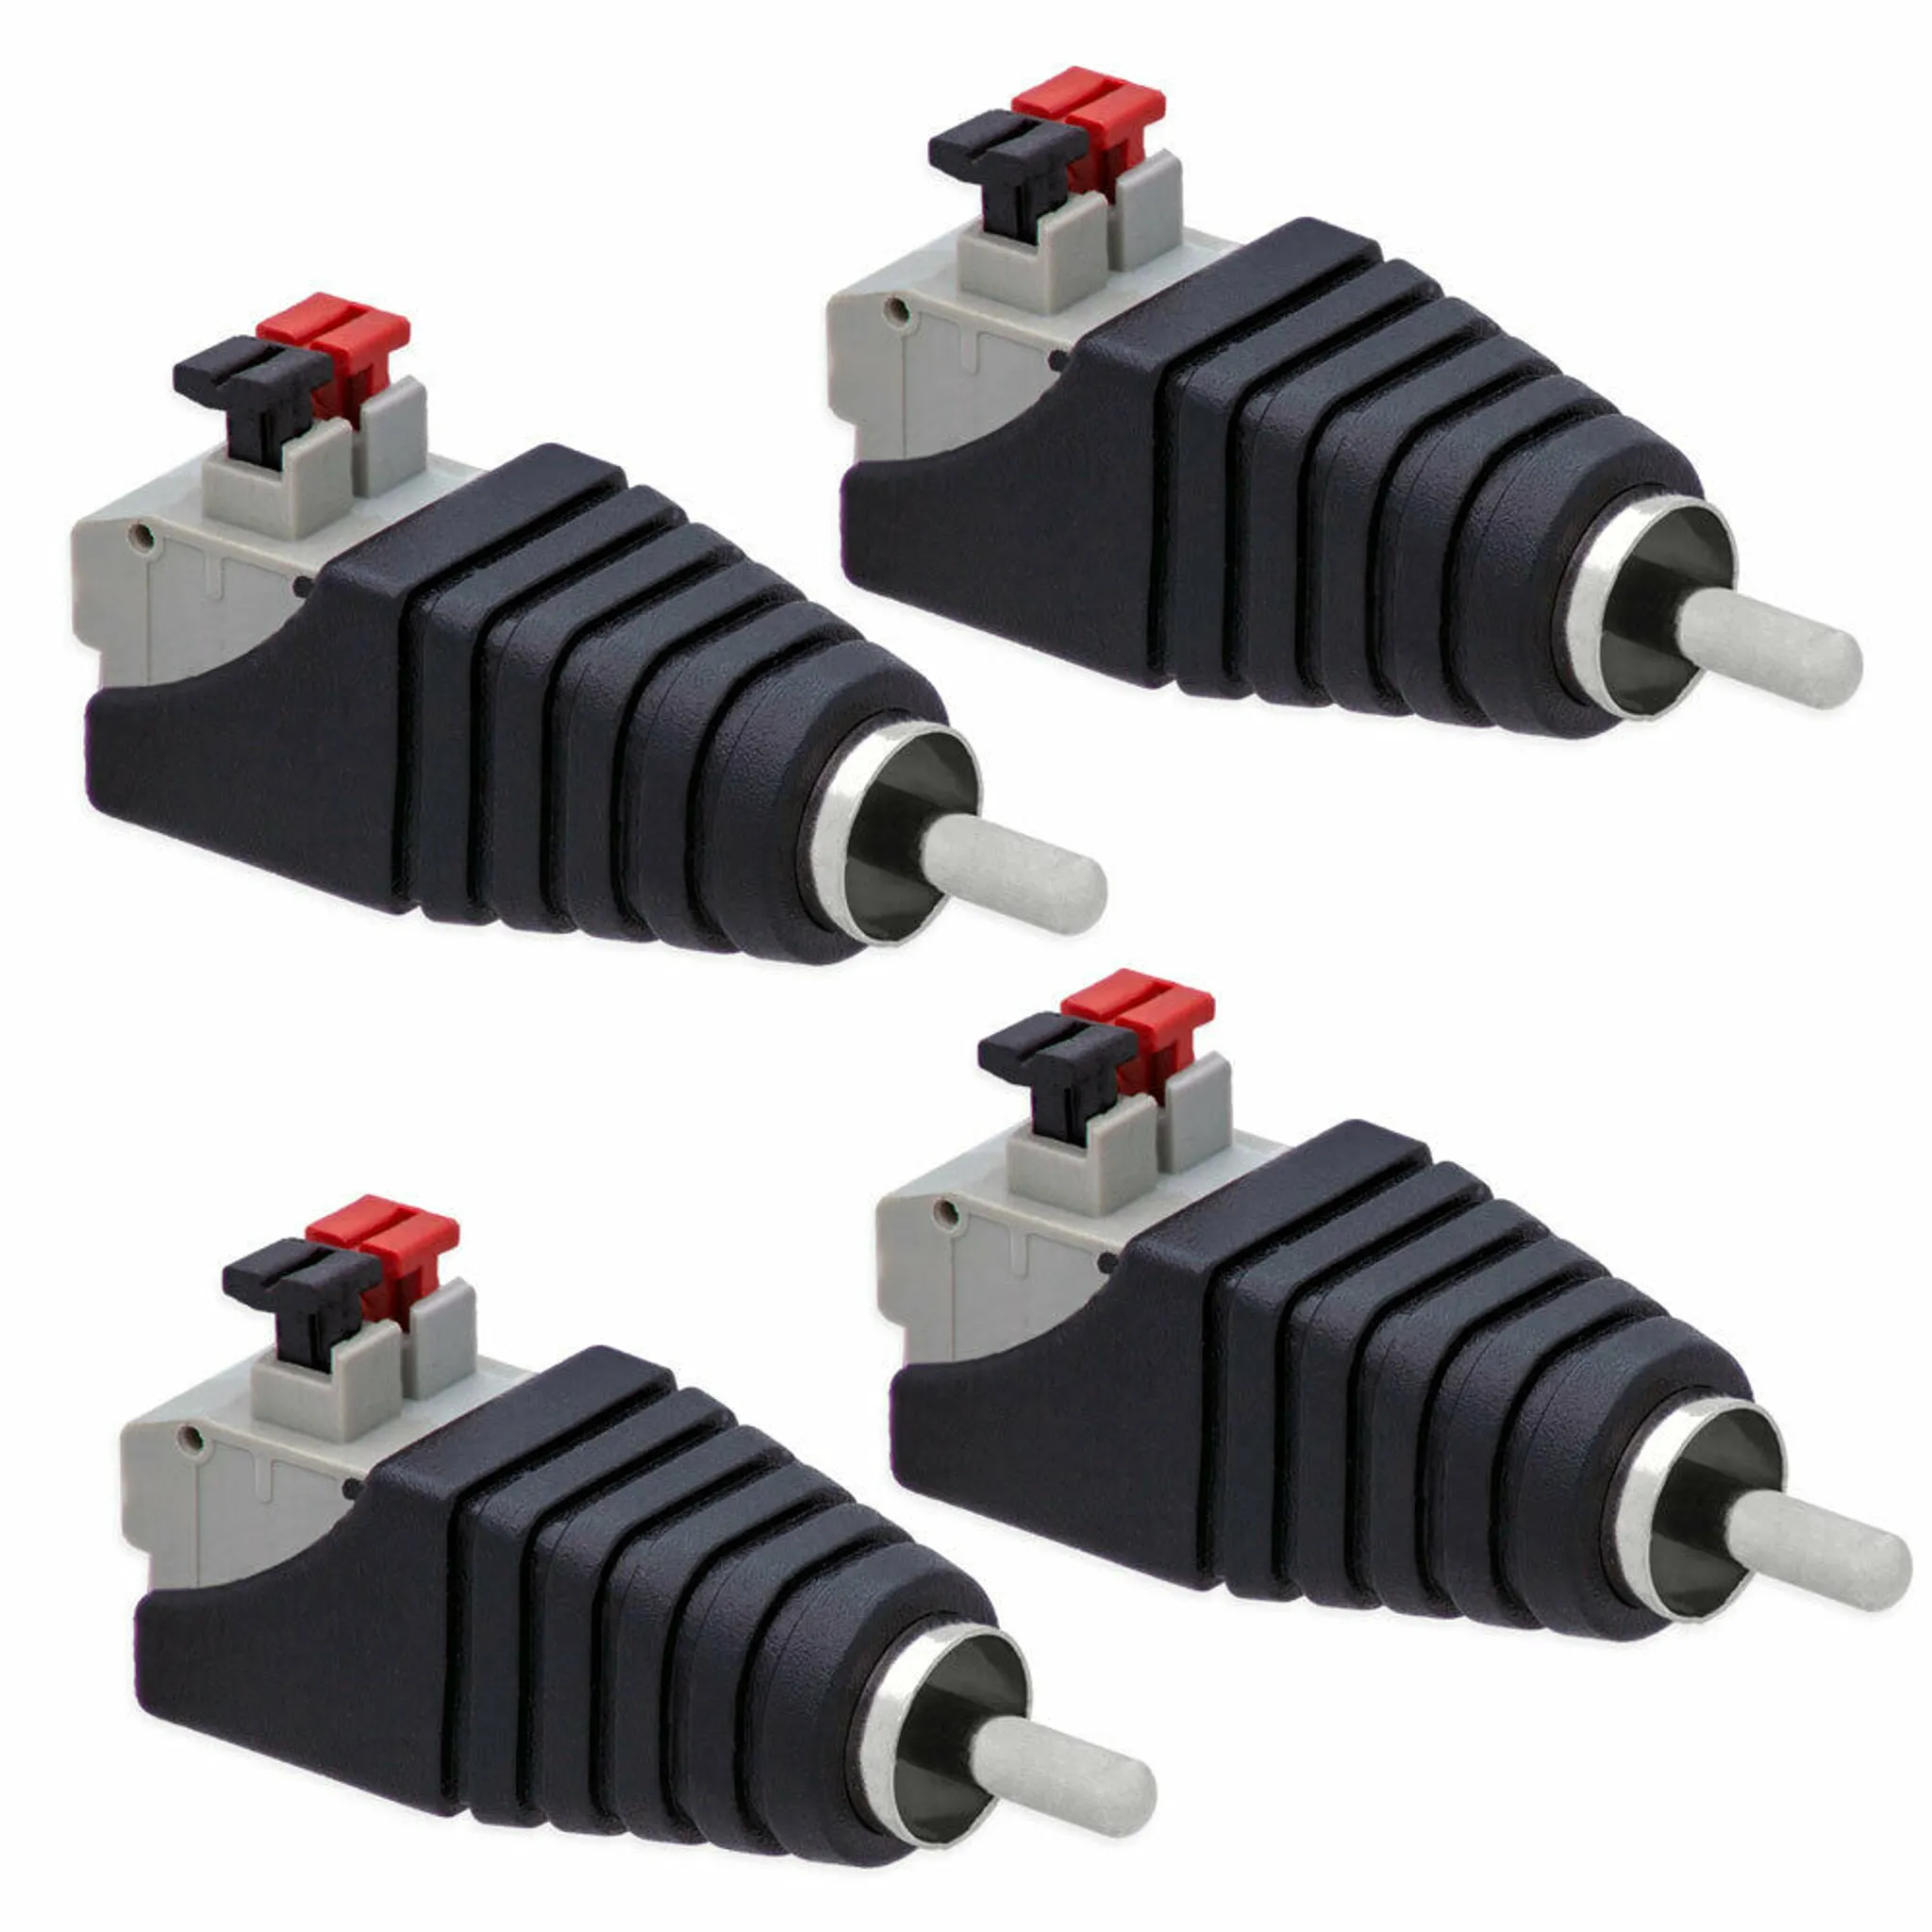 12V KFZ Strom Kabel Verteiler Block 1x 25mm² 4x 10mm² 1 zu 4 für